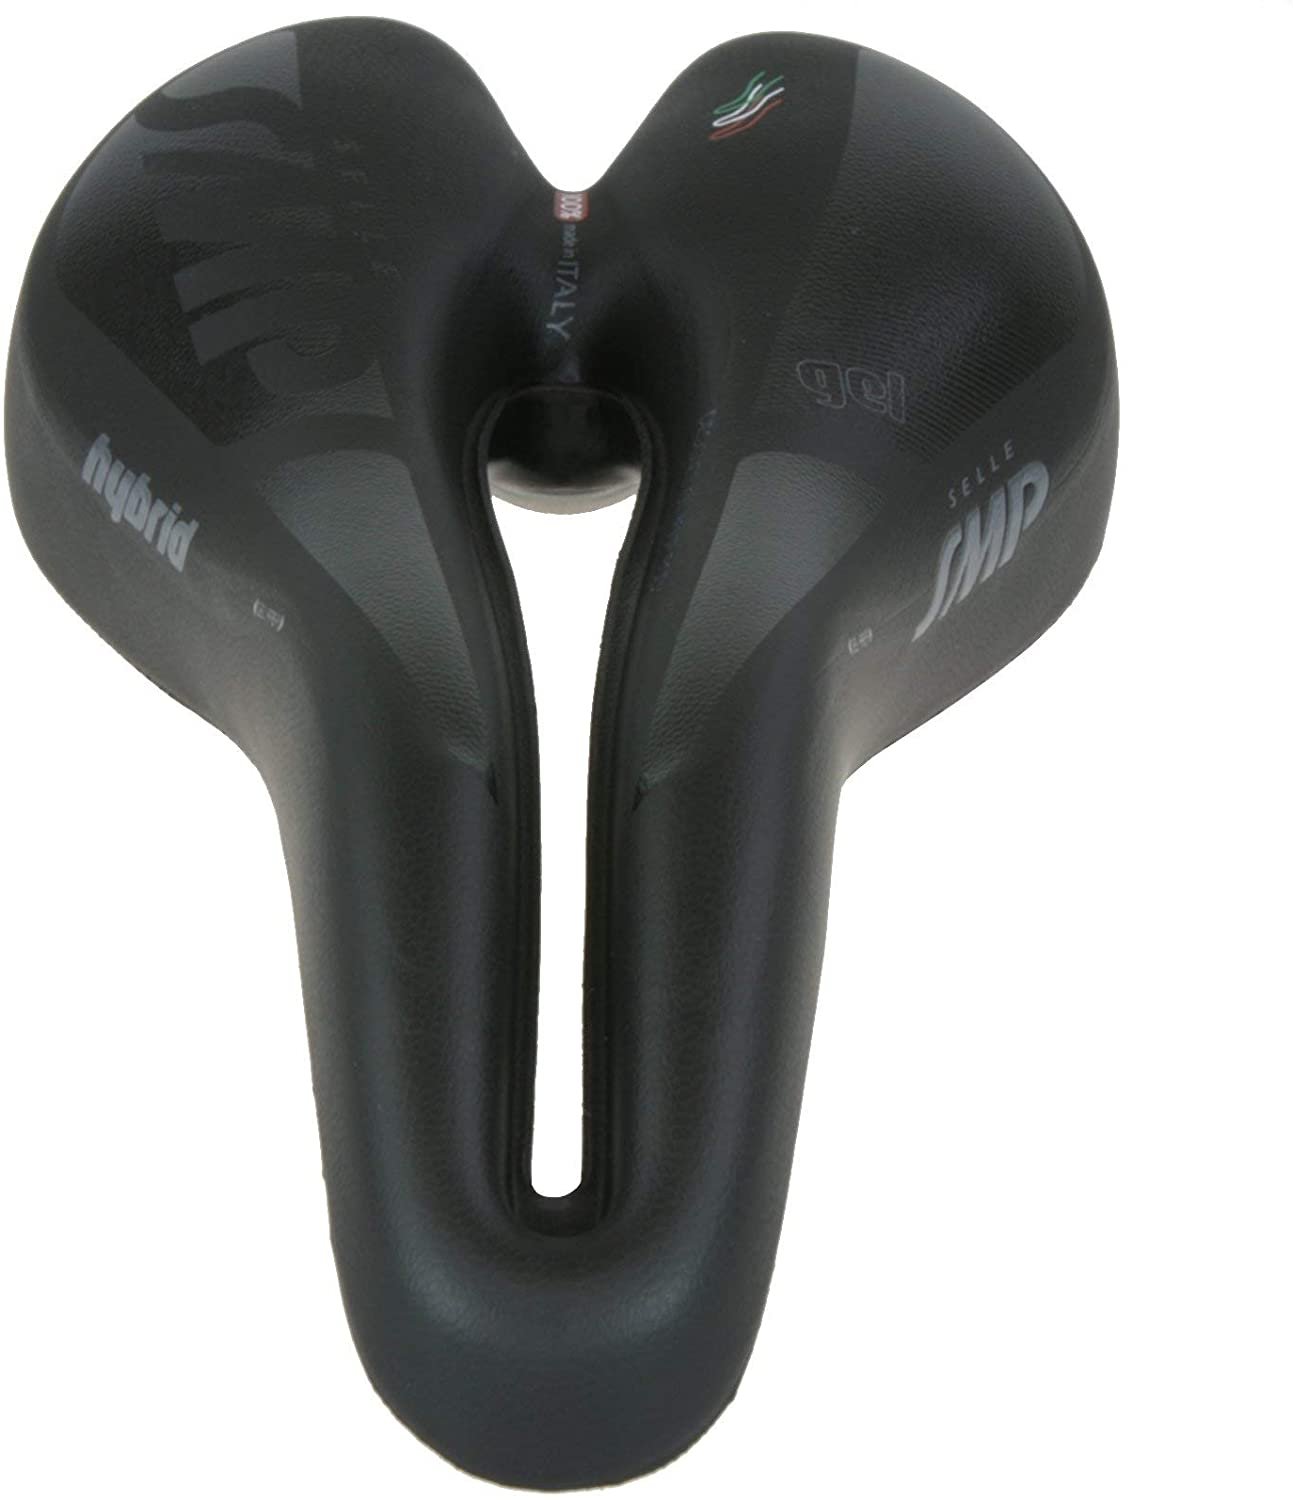 Selle SMP Hybrid Gel Saddle (Black)